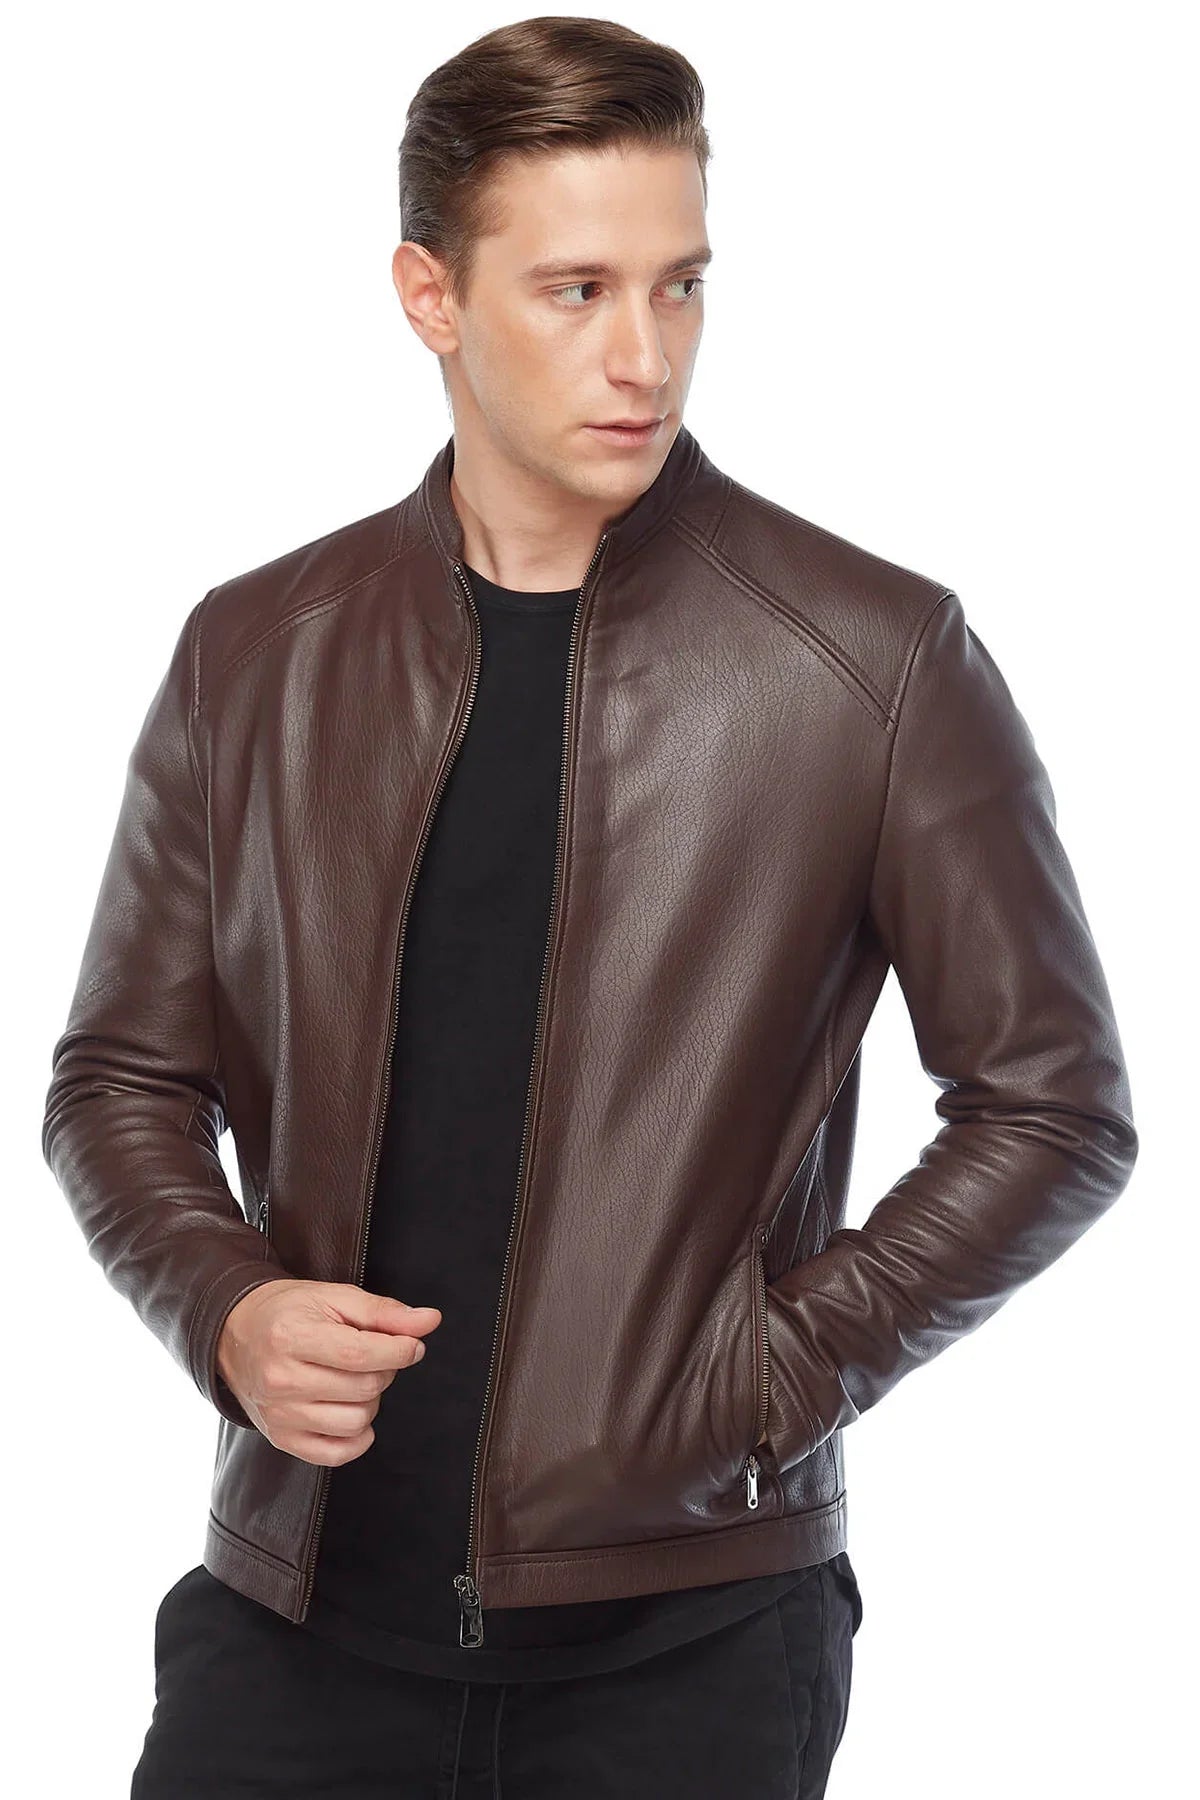 Plain Brown Leather Fashion Biker Jacket